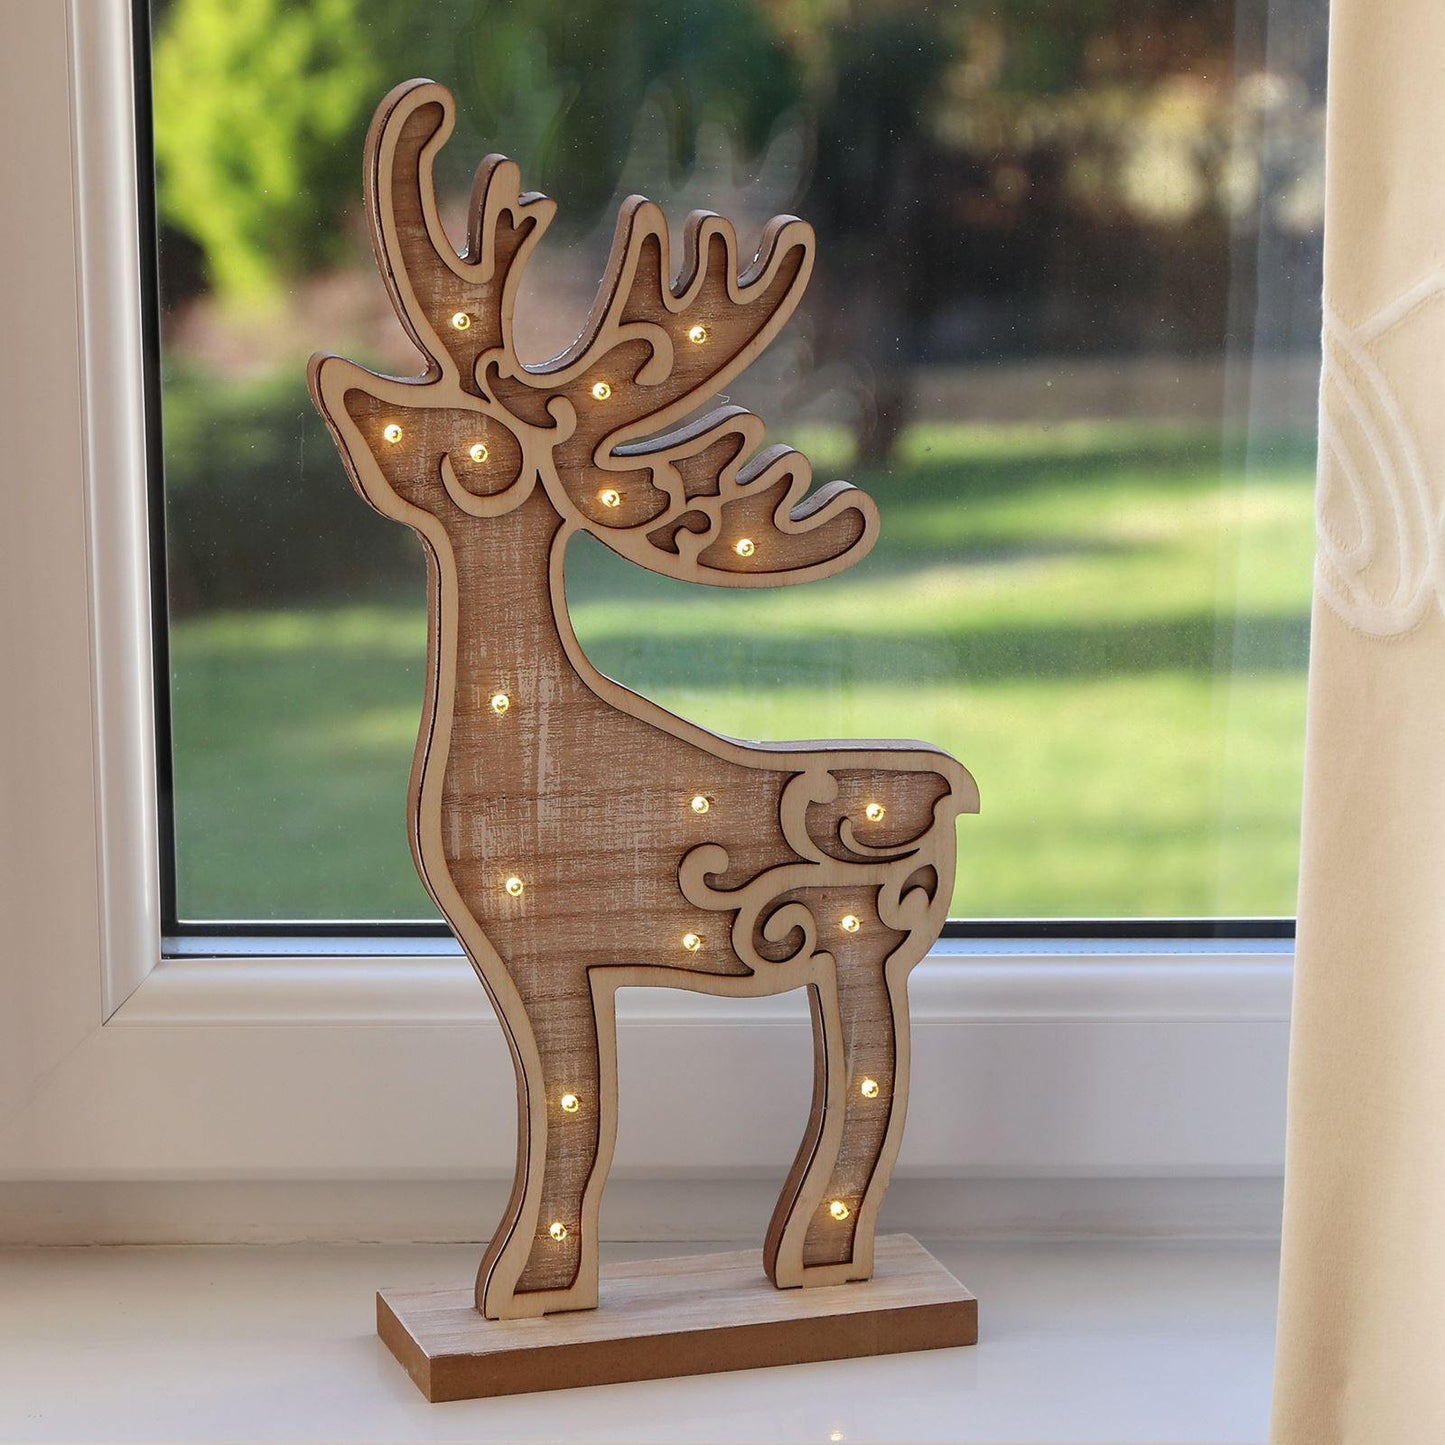 Mr Crimbo 16" Light Up Reindeer Wooden Christmas Decoration - MrCrimbo.co.uk -XS5069 - -decorations